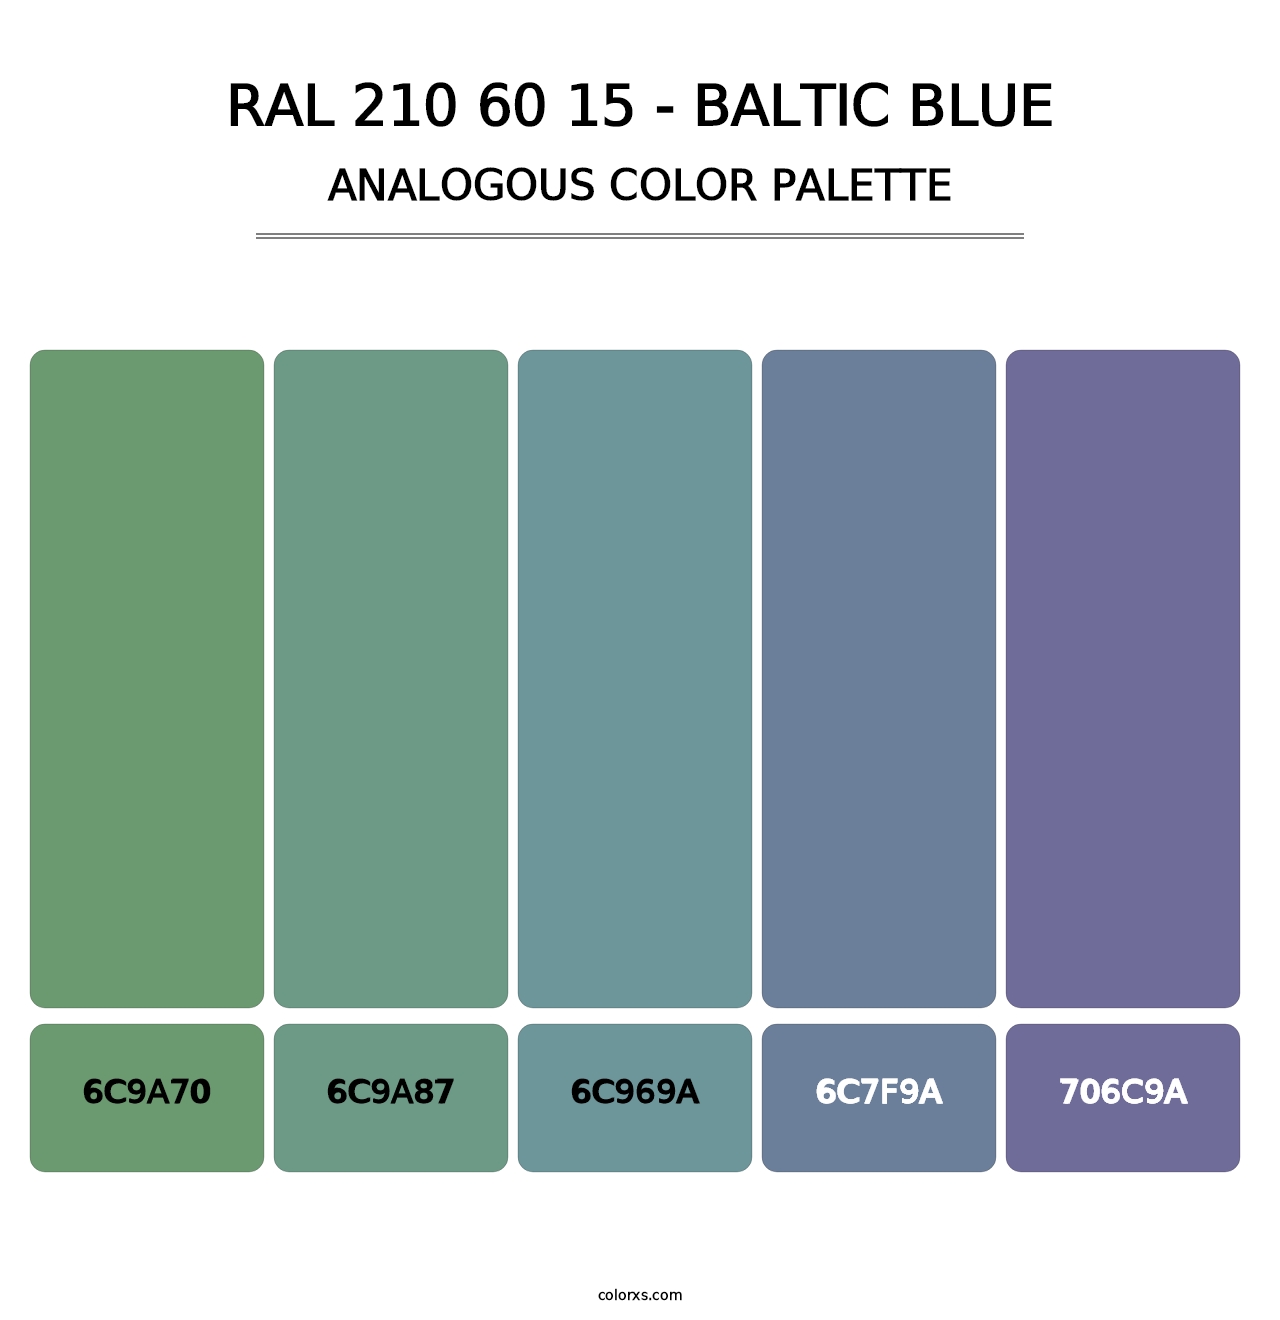 RAL 210 60 15 - Baltic Blue - Analogous Color Palette